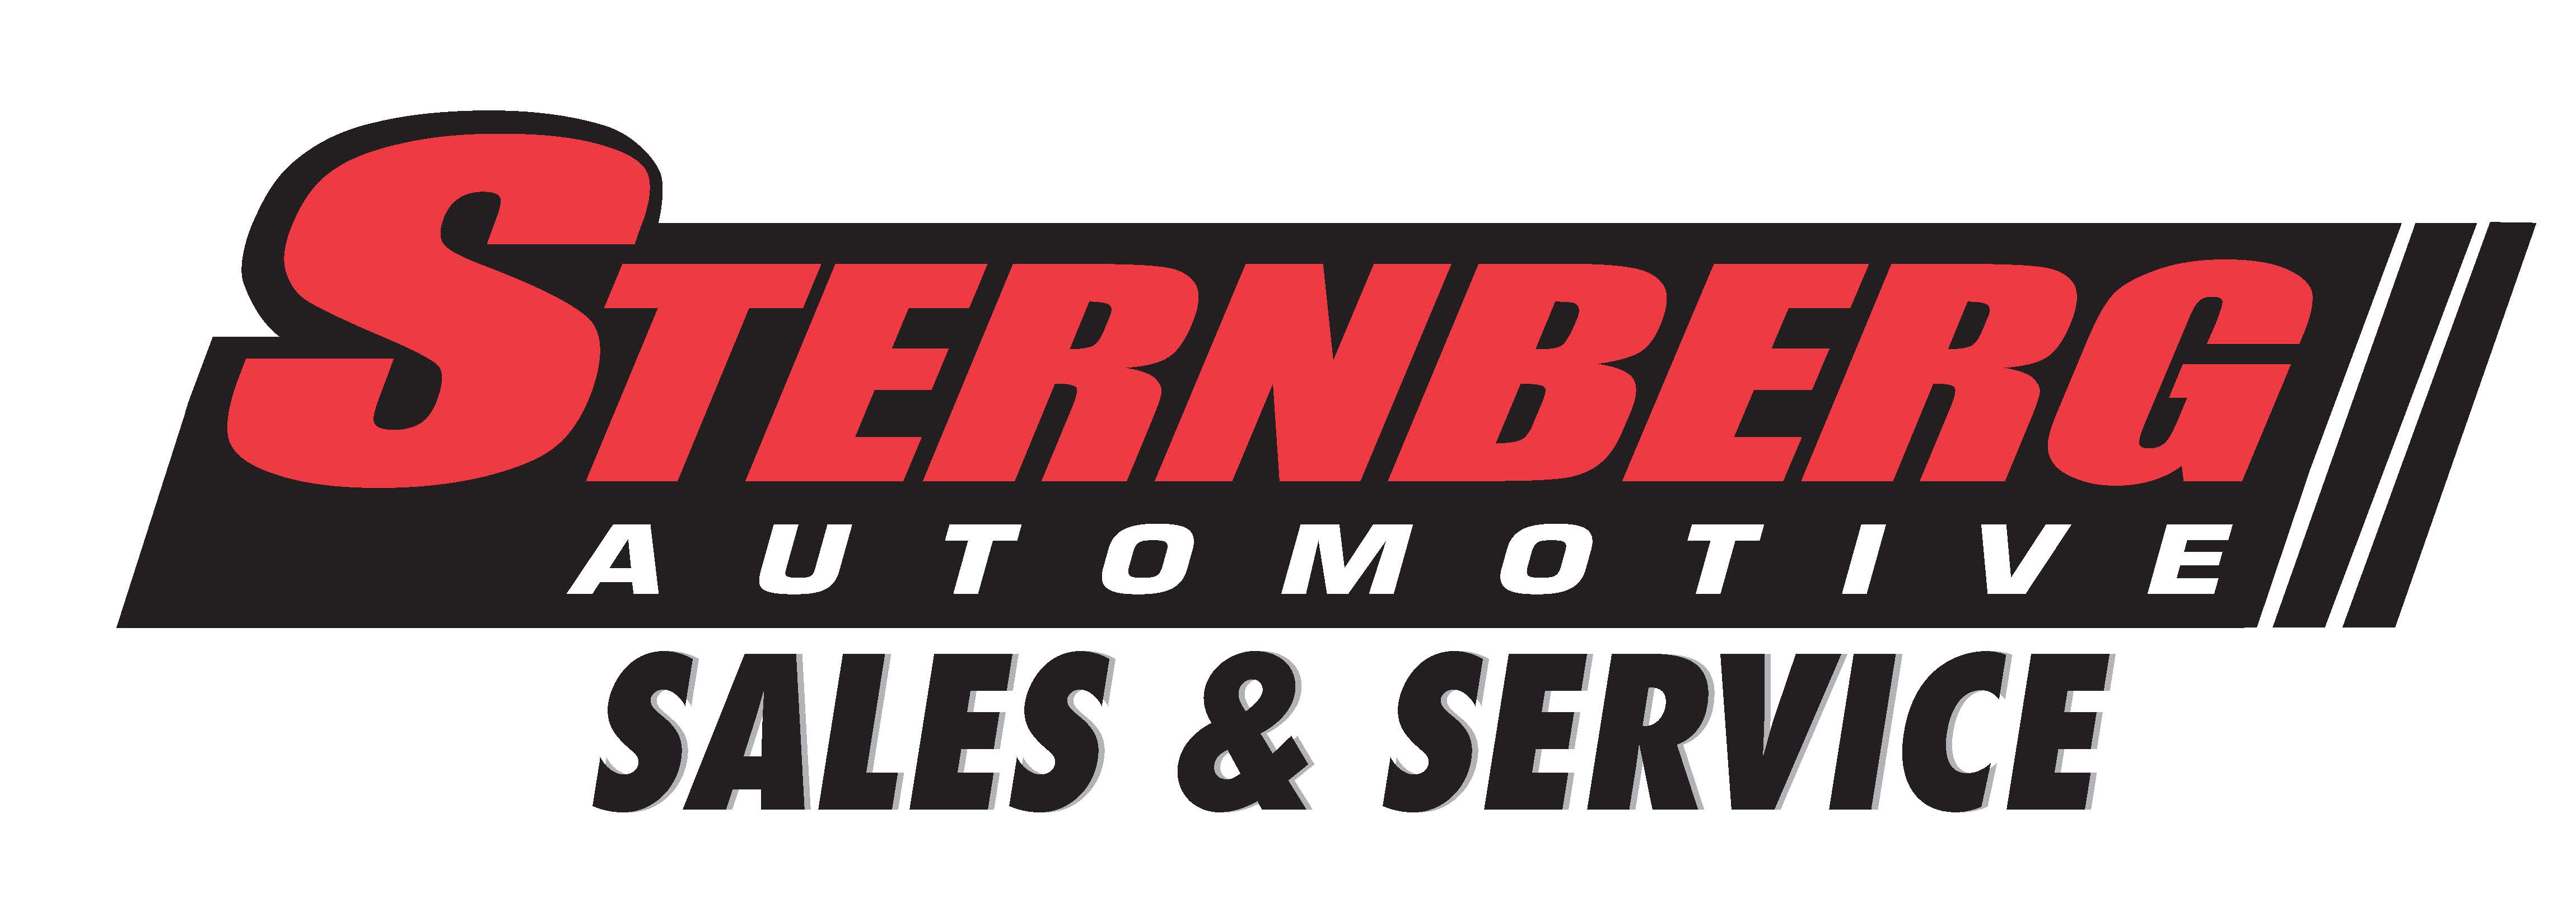 Sternberg Automotive Group